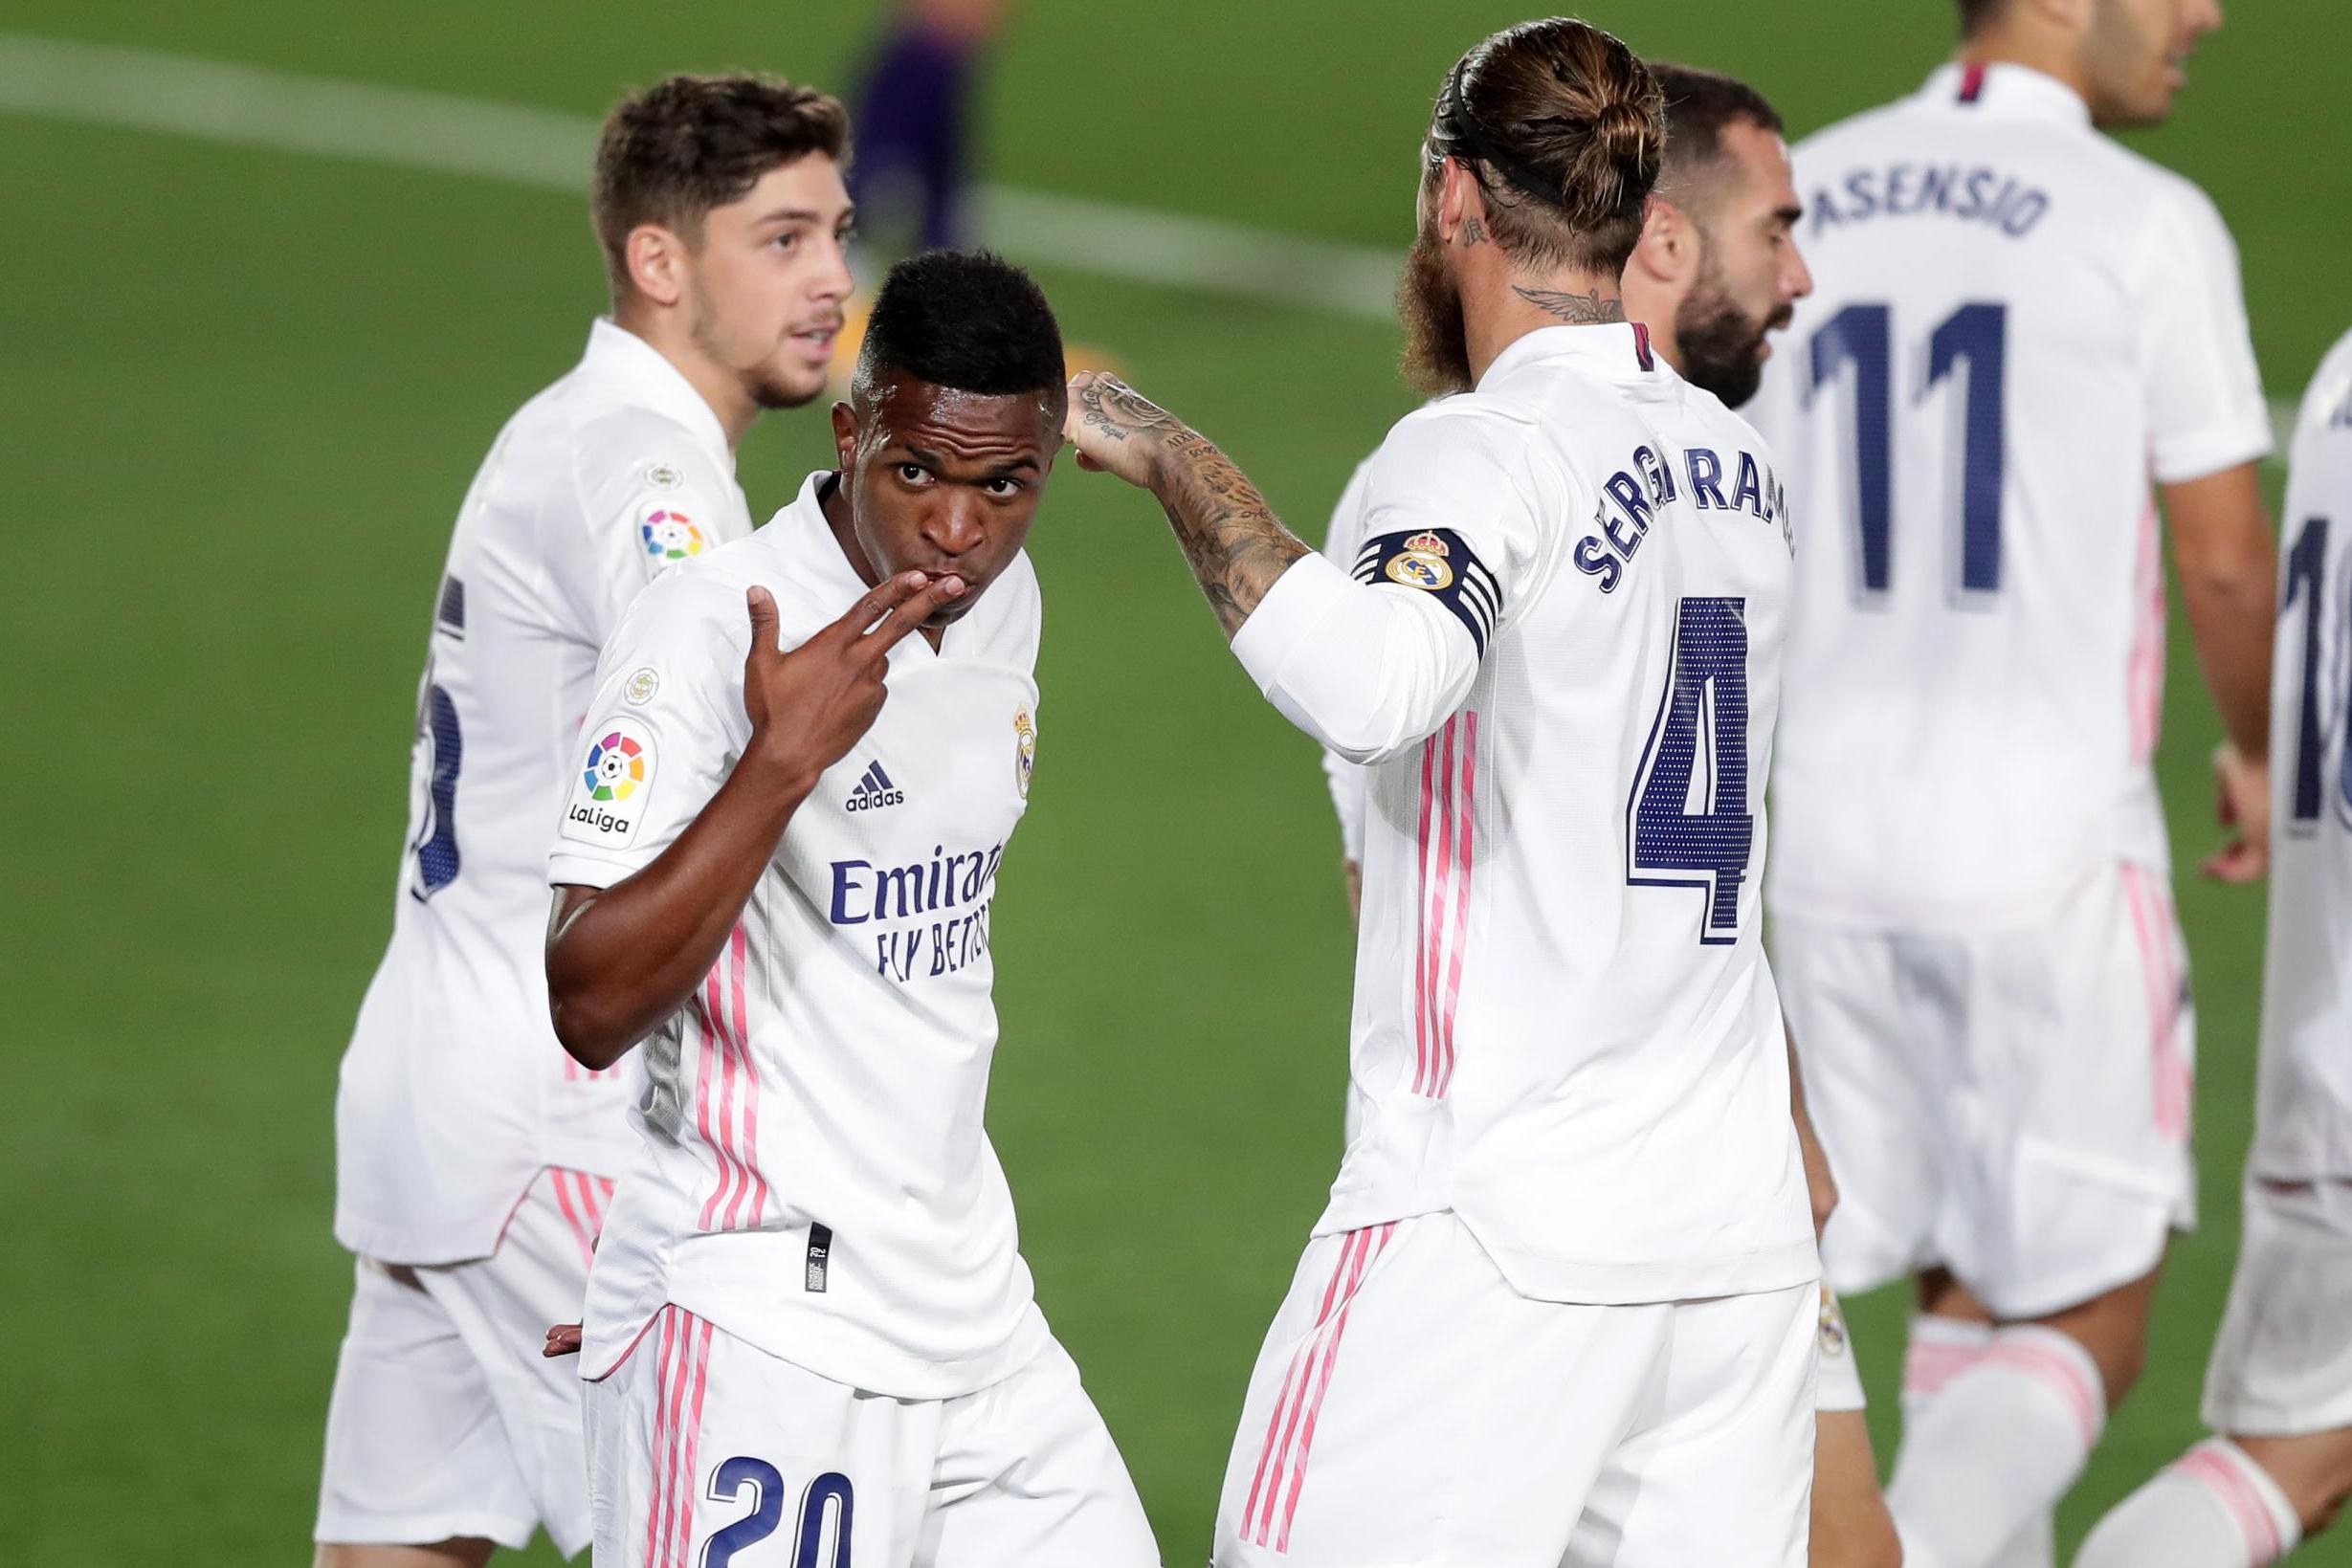 Vinicius et Asensio titulaires, Odegaard sur le banc, les compos officielles de Levante-Real Madrid